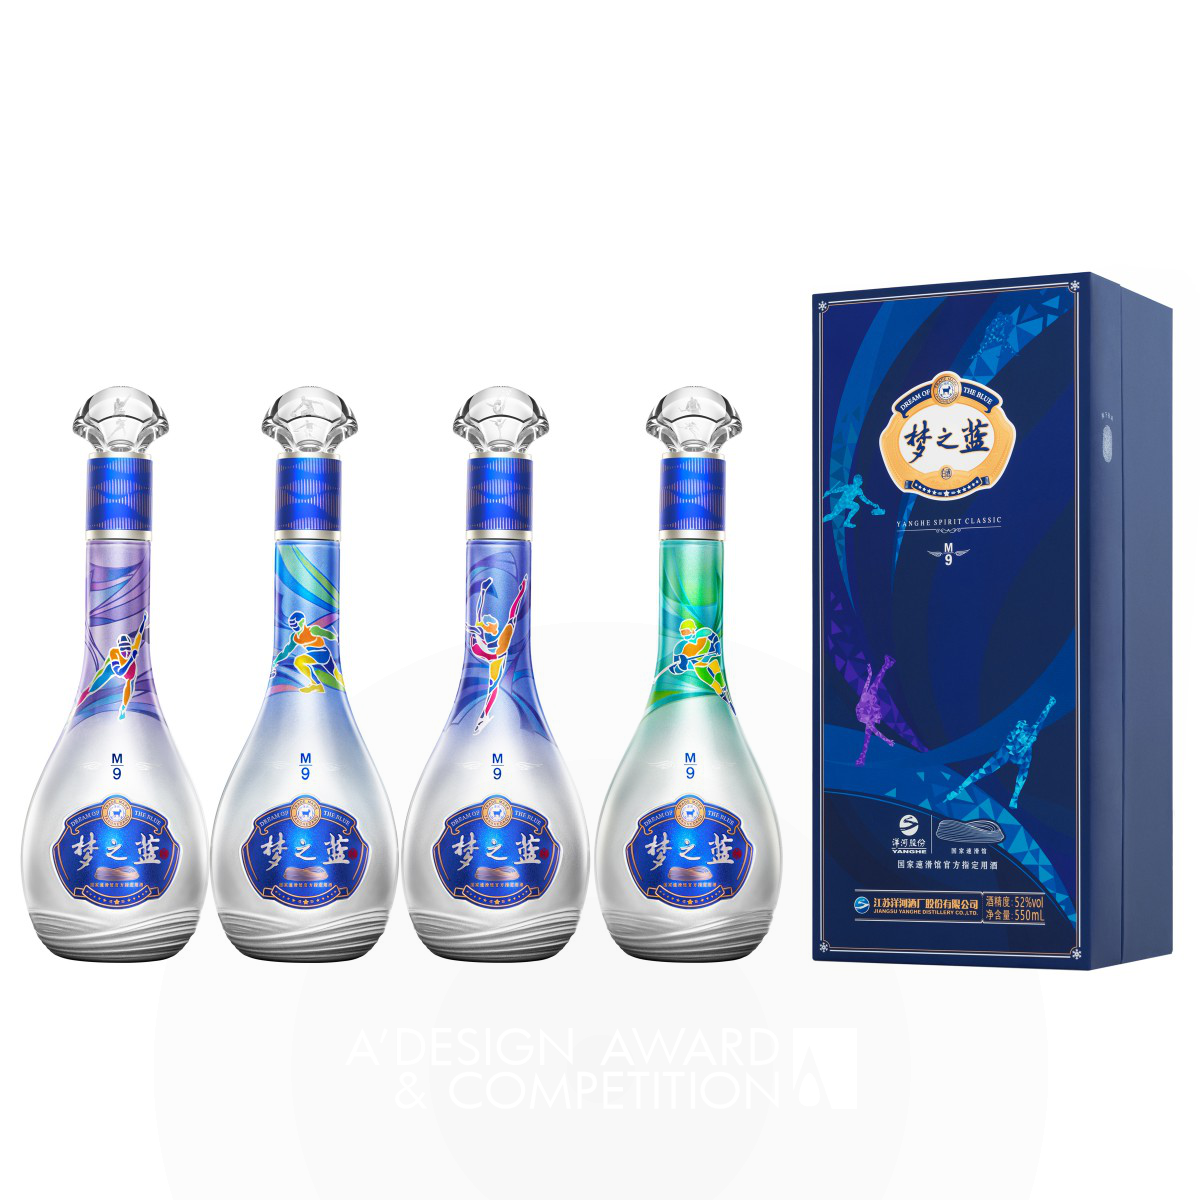 Dream Dance Ice Ribbon Alcoholic Beverage Packaging by Liandong Zhang, Huashuang Liu and Zhaoxin Zhu Bronze Packaging Design Award Winner 2023 